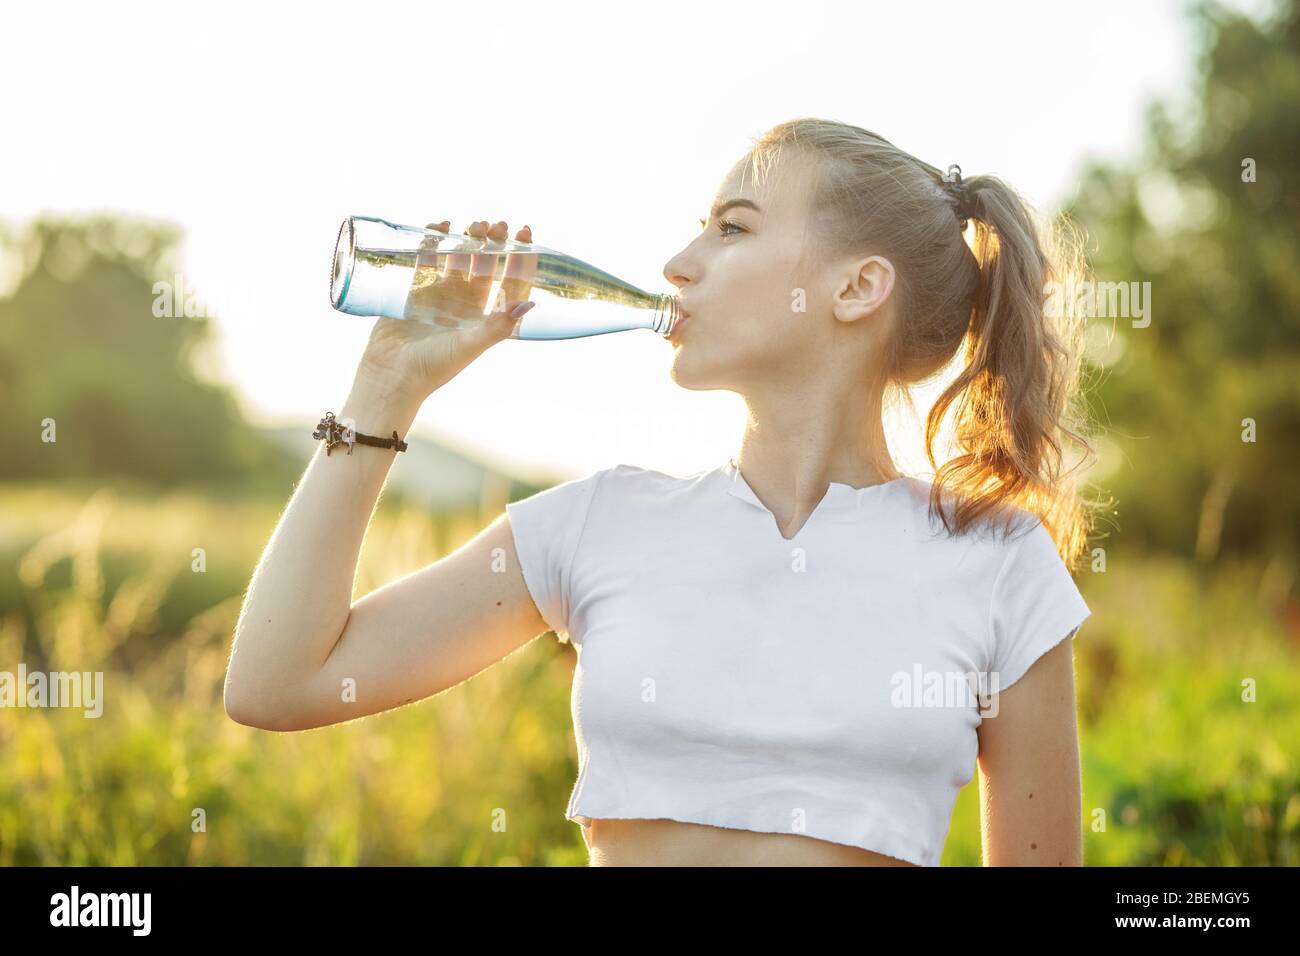 Une fille sportive boit de l'eau après un entraînement. Le concept de sport, d'été et de mode de vie sain. Banque D'Images